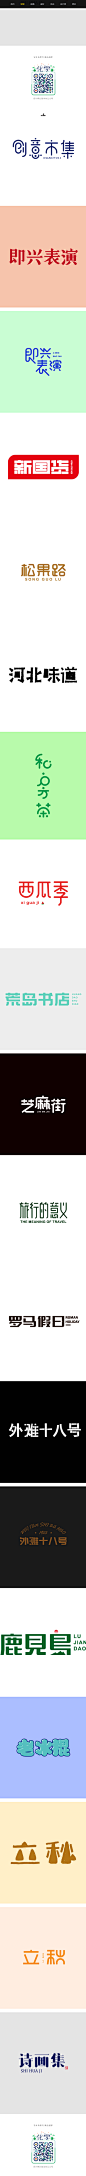 字体集2-字体传奇网-中国首个字体品牌设计师交流网